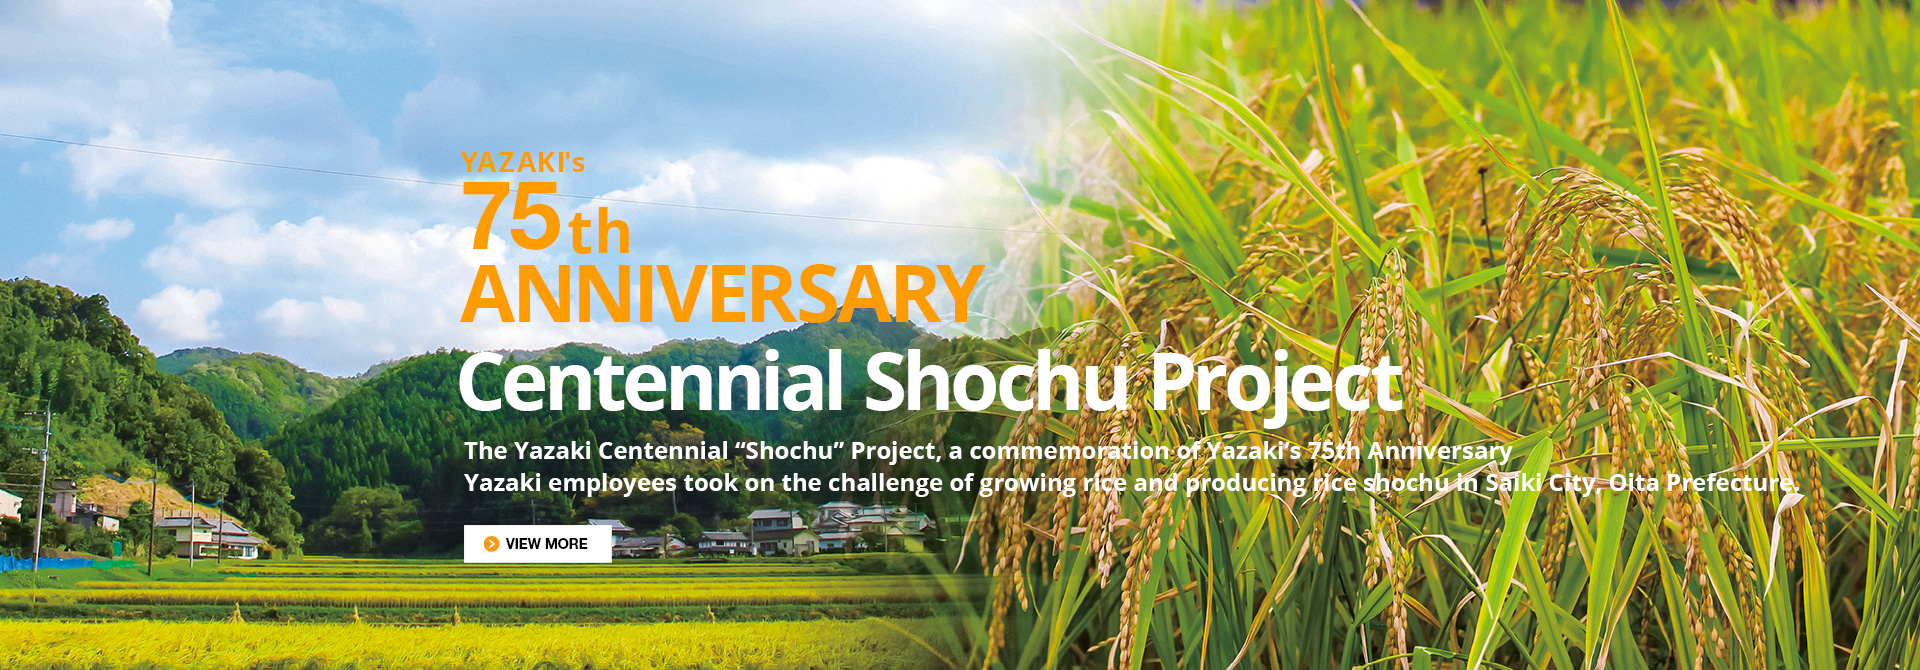 Centennial Shochu Project